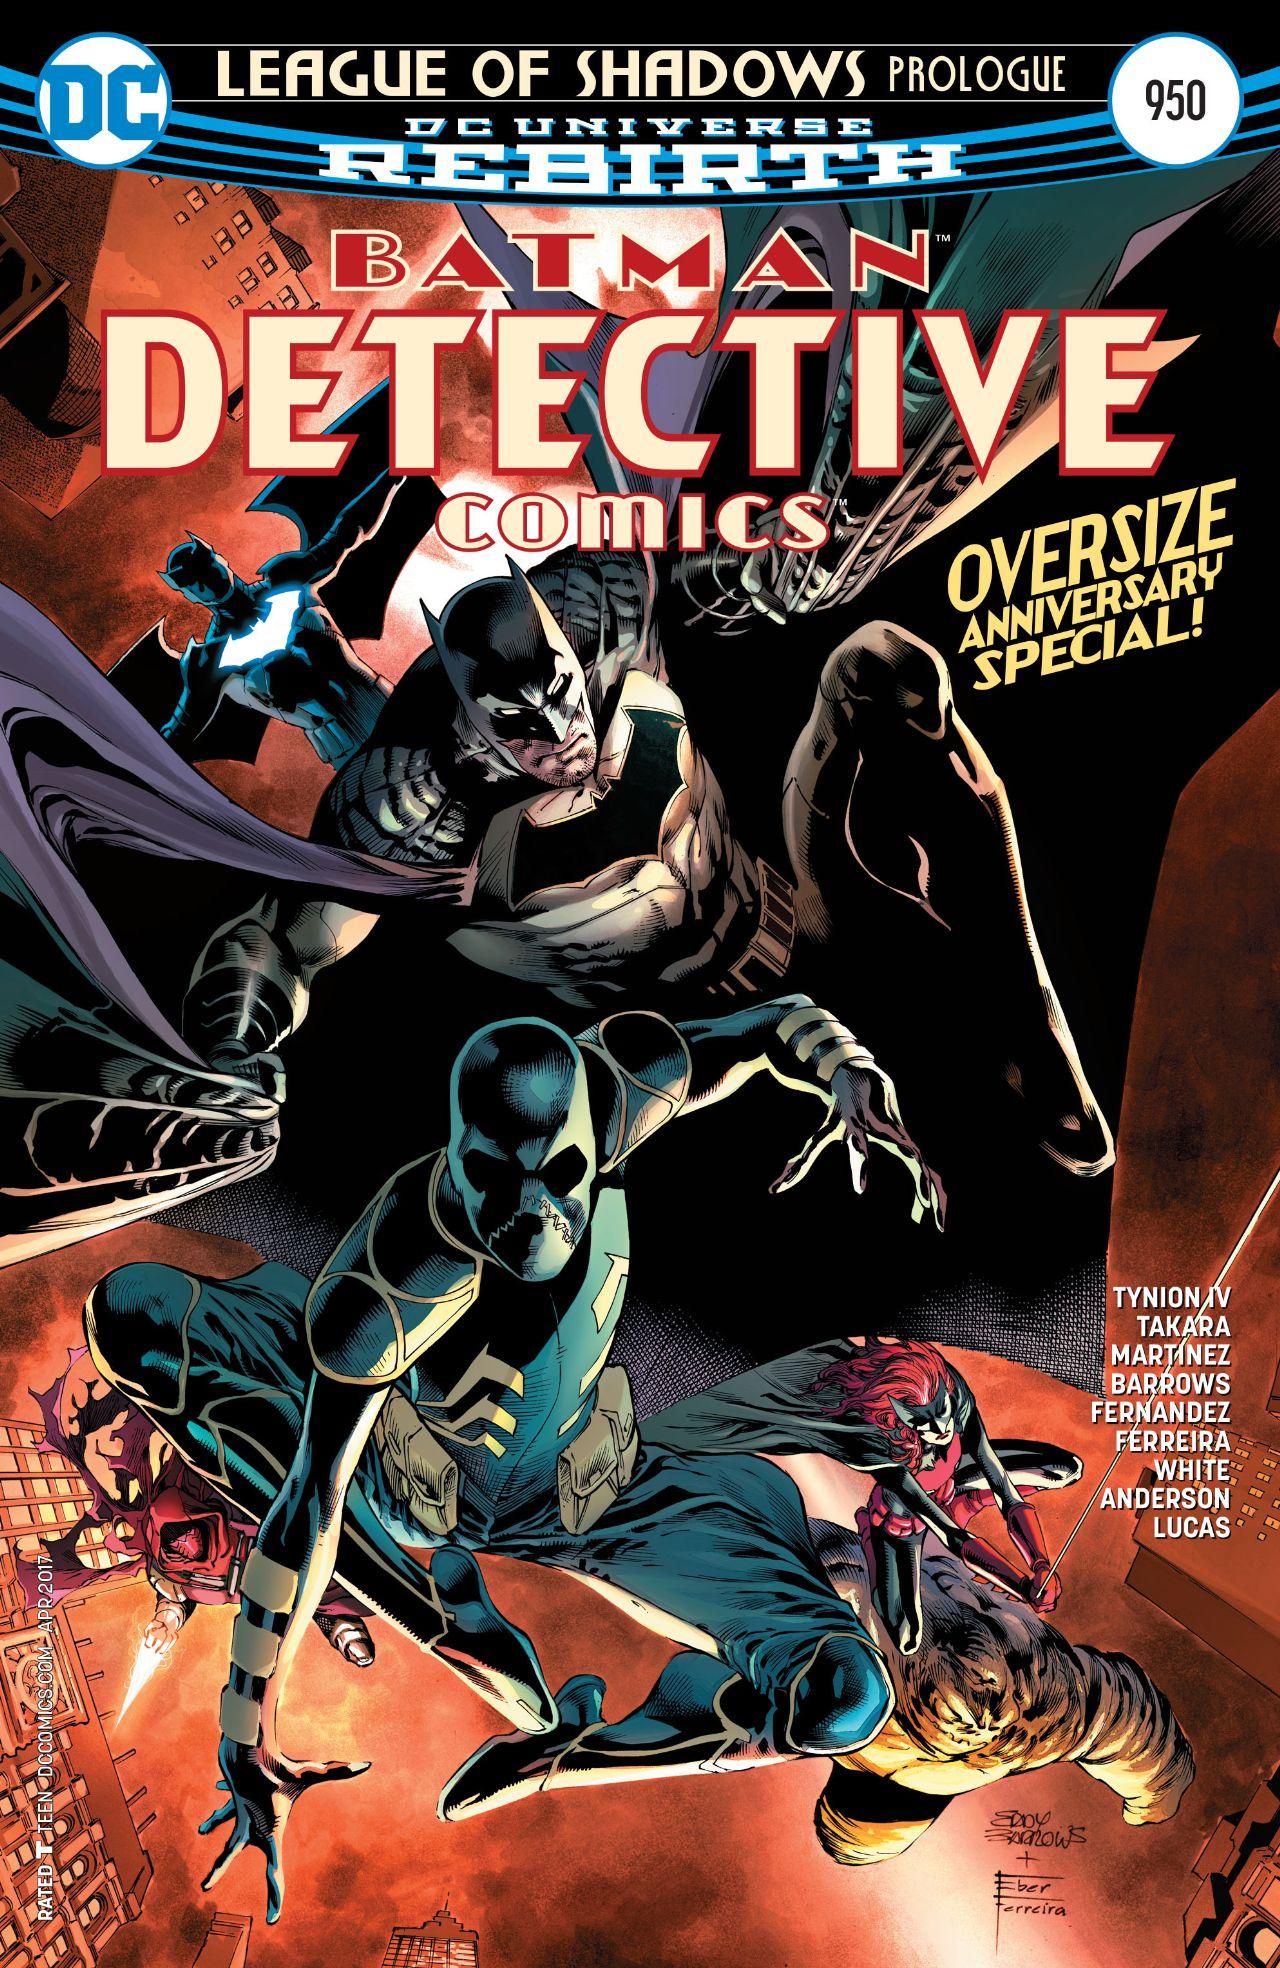 Detective Comics Vol. 1 #950